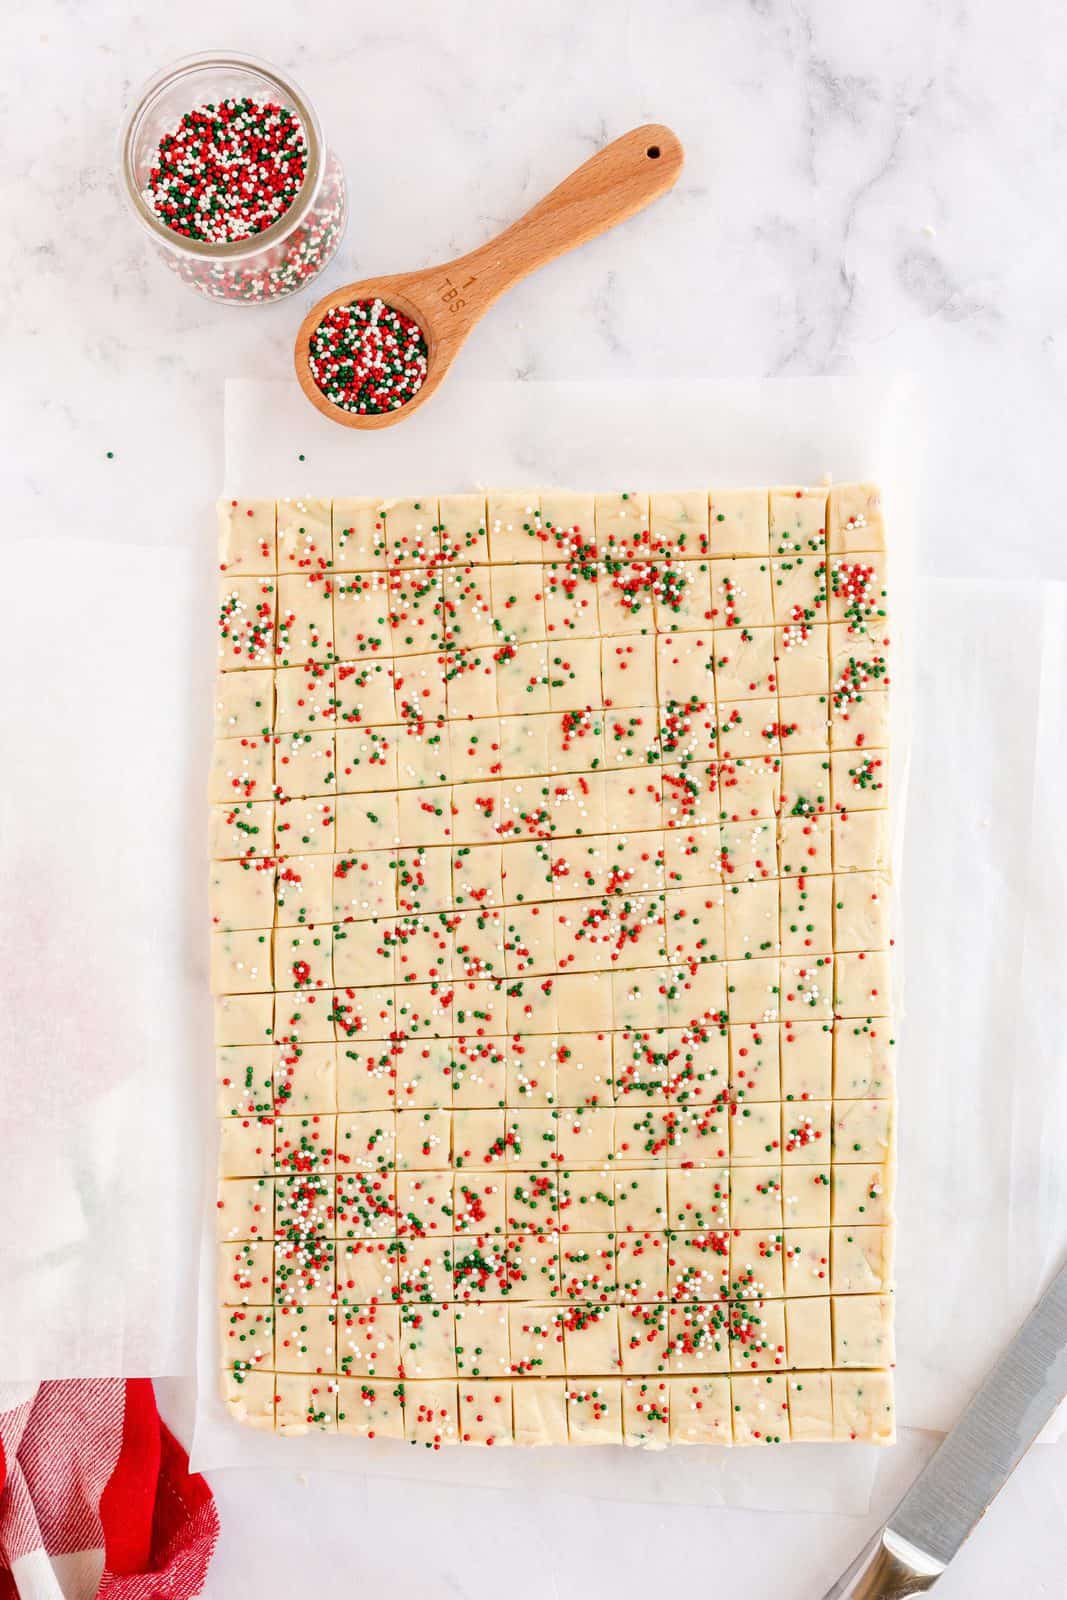 Shortbread dough cut into small squares on parchment paper.